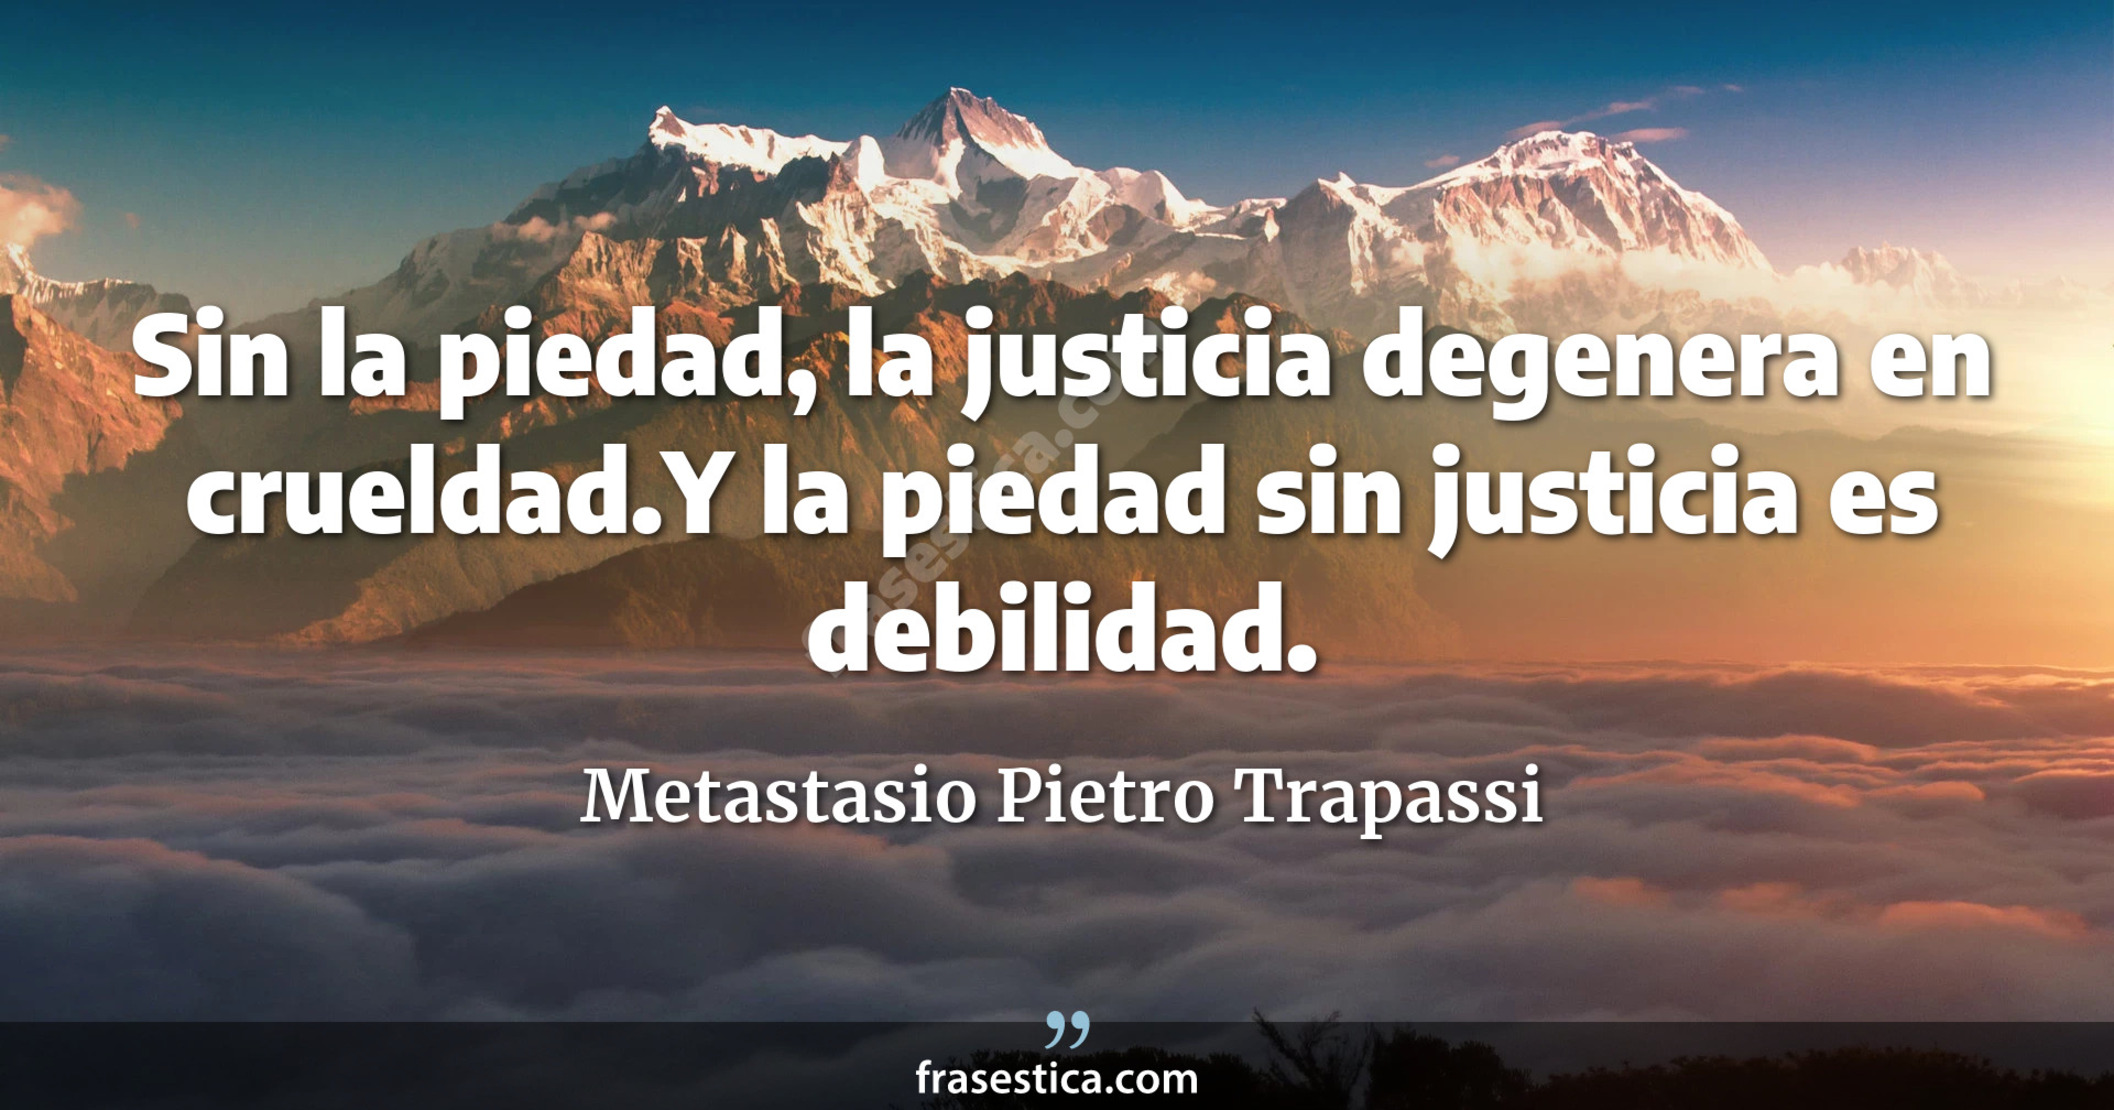 Sin la piedad, la justicia degenera en crueldad.Y la piedad sin justicia es debilidad. - Metastasio Pietro Trapassi